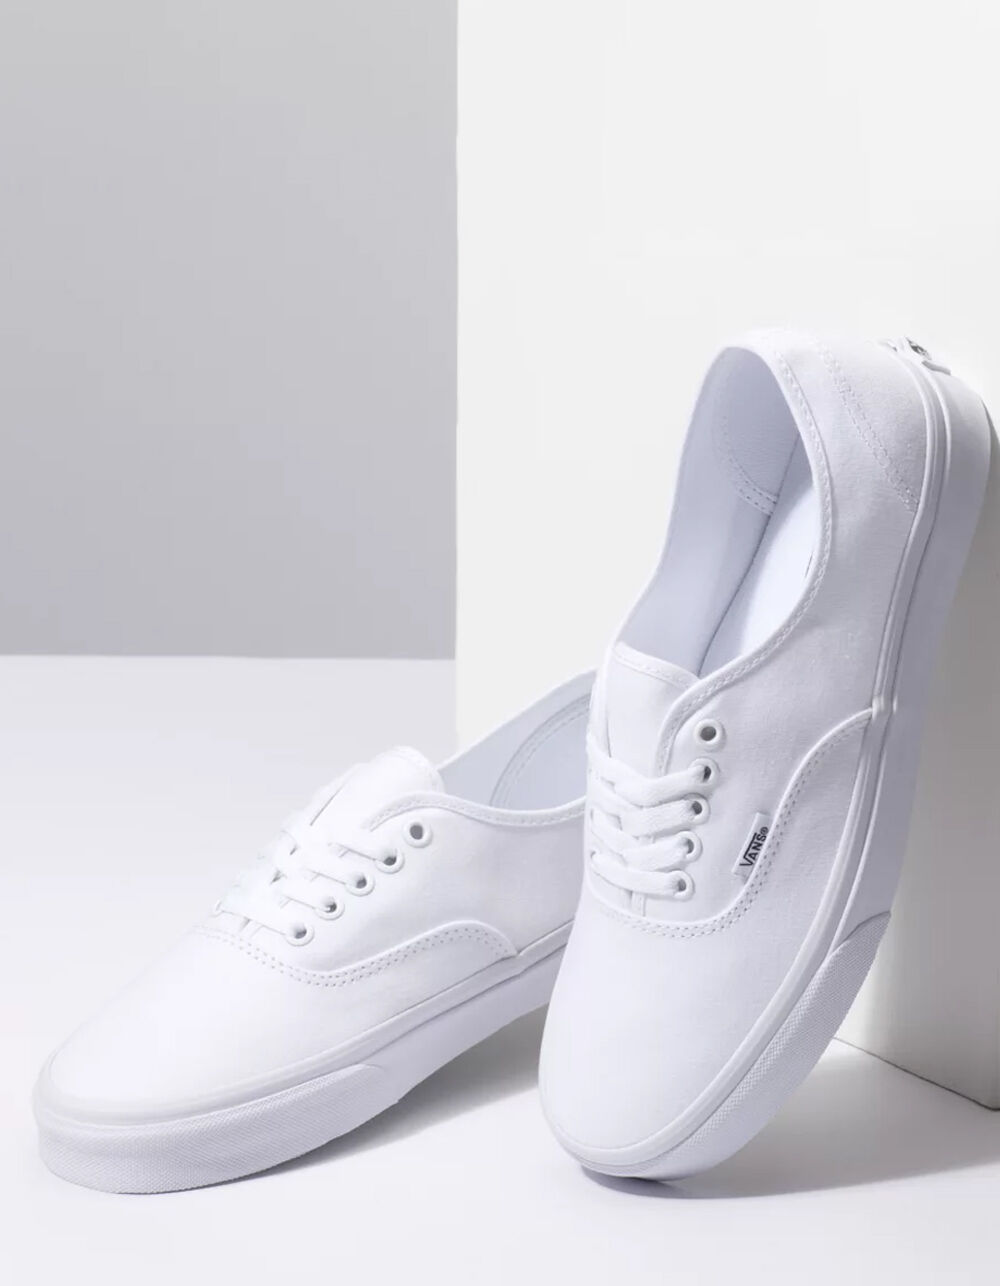 Vans Authentic Boys Grade School Shoes, True White, Size 4